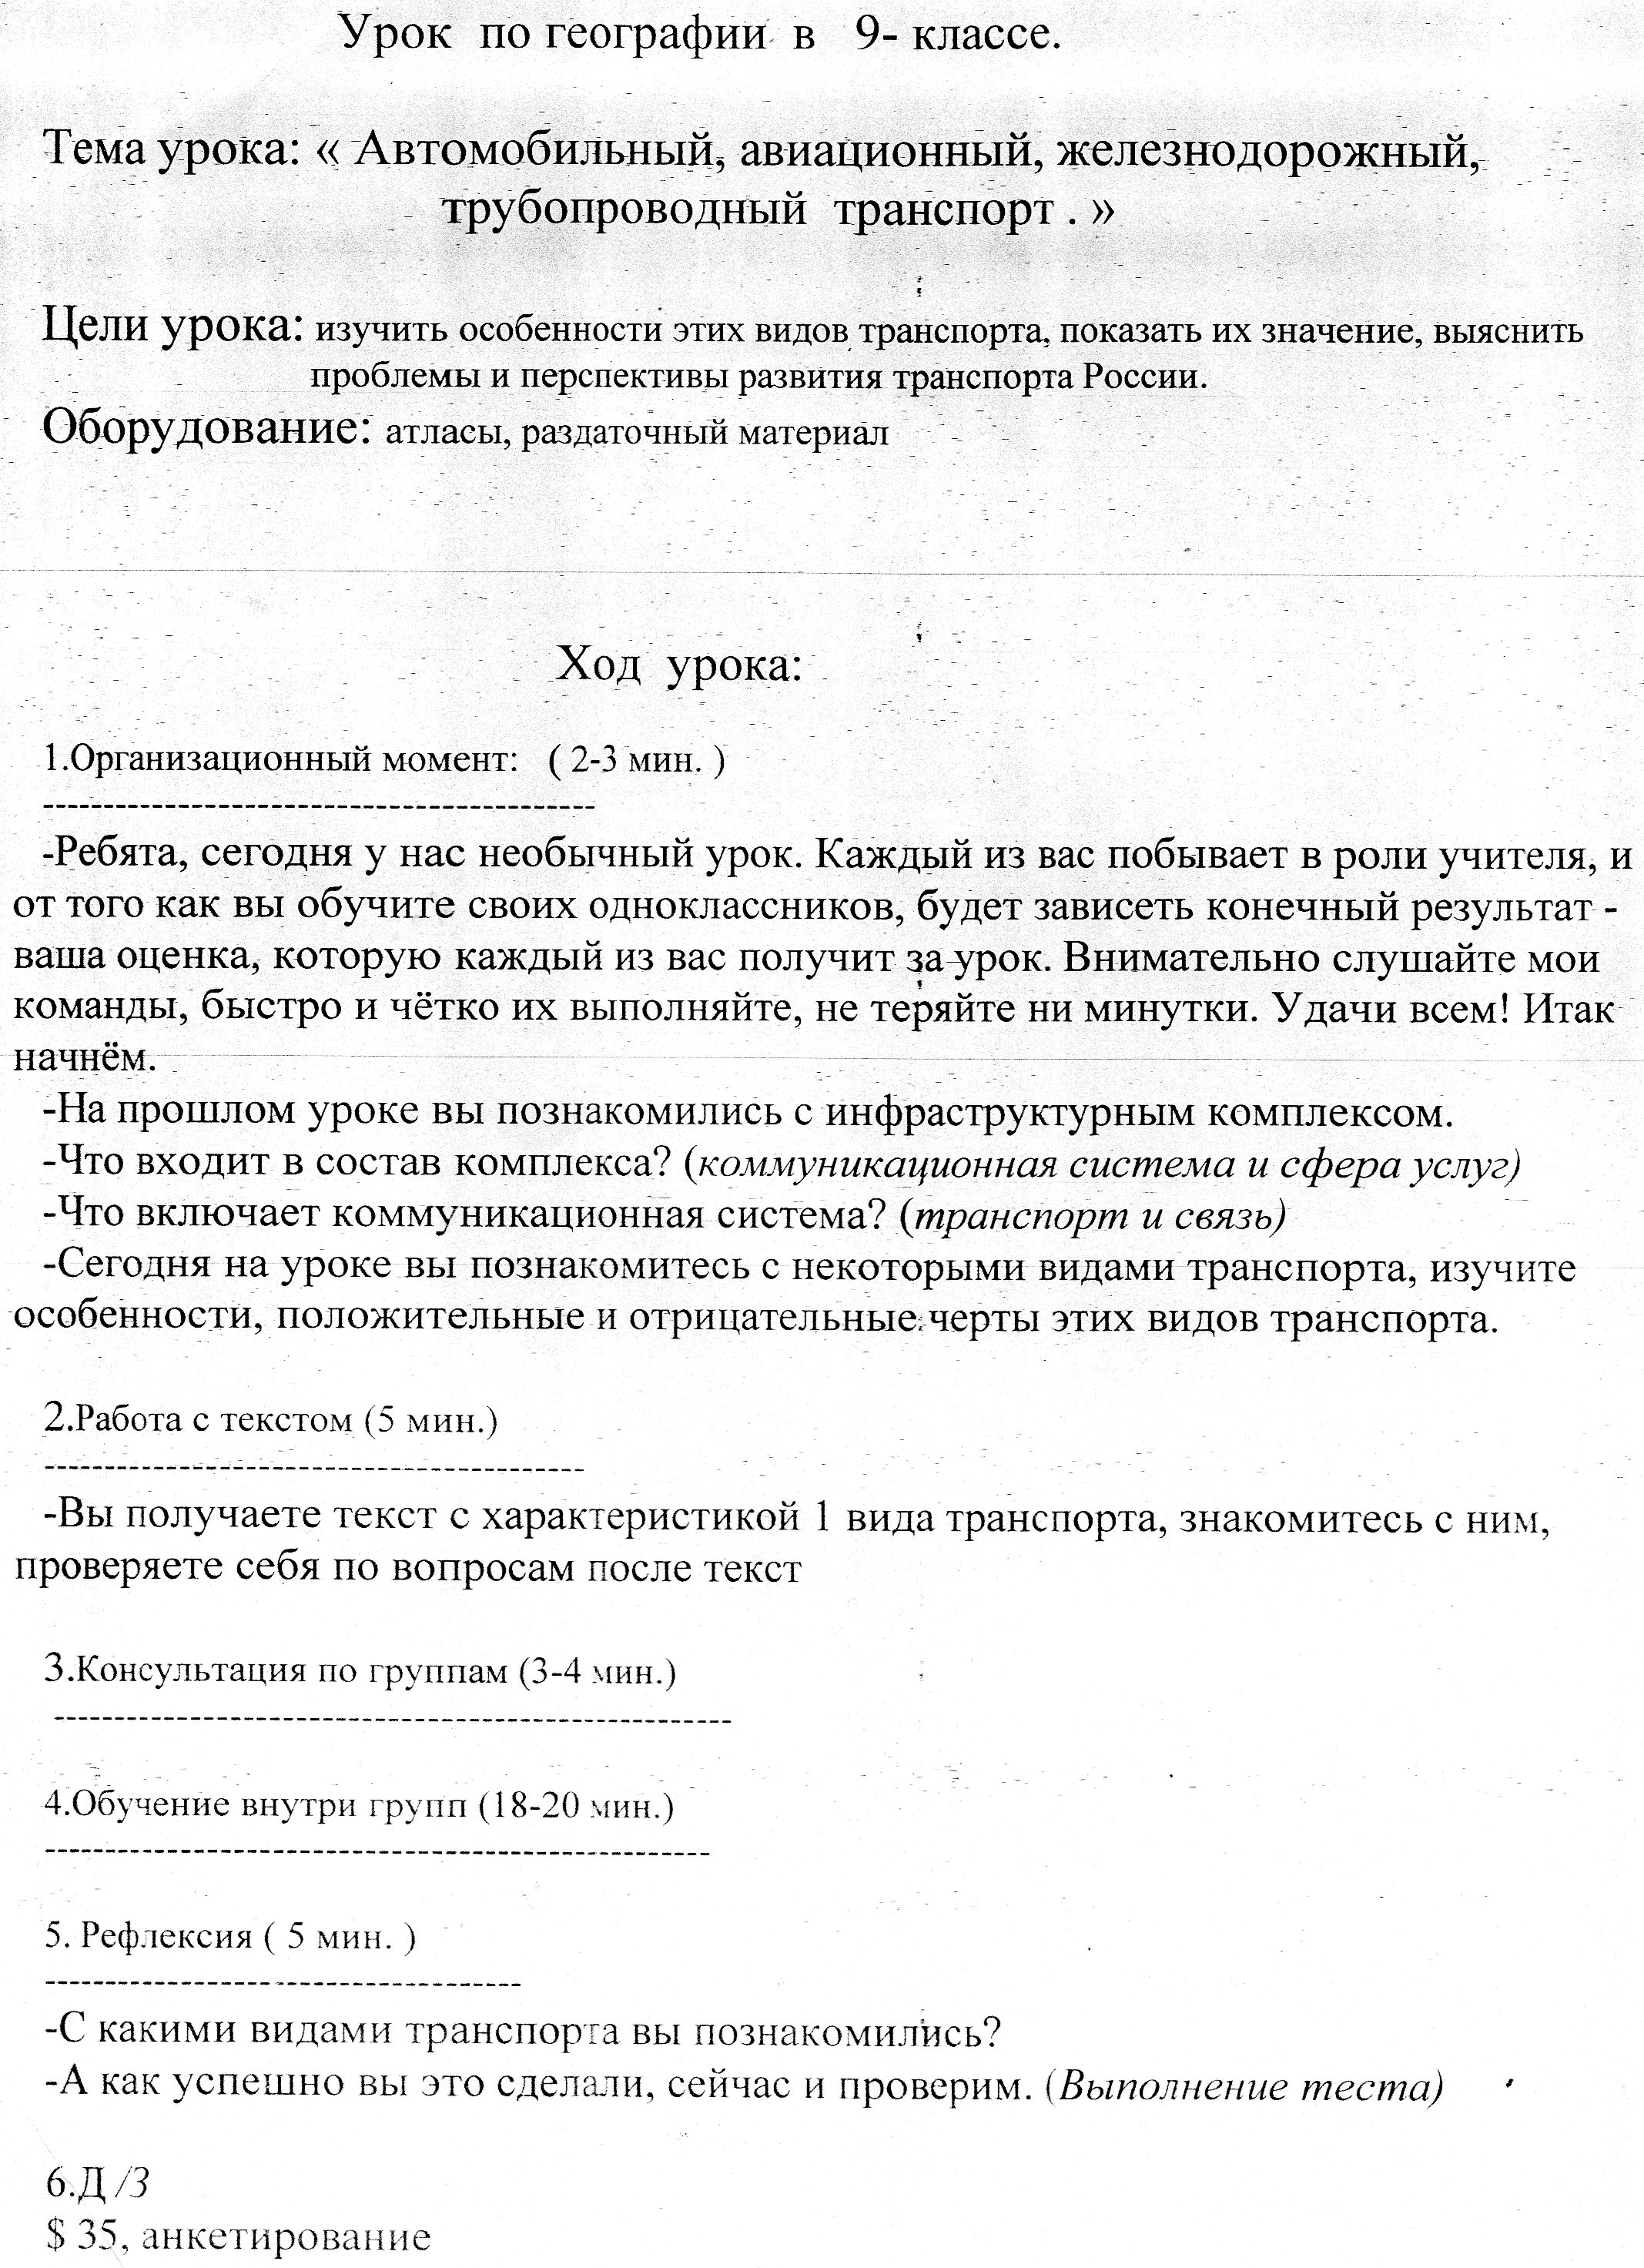 Конспект урока по географии на тему Транспорт России (9 класс)